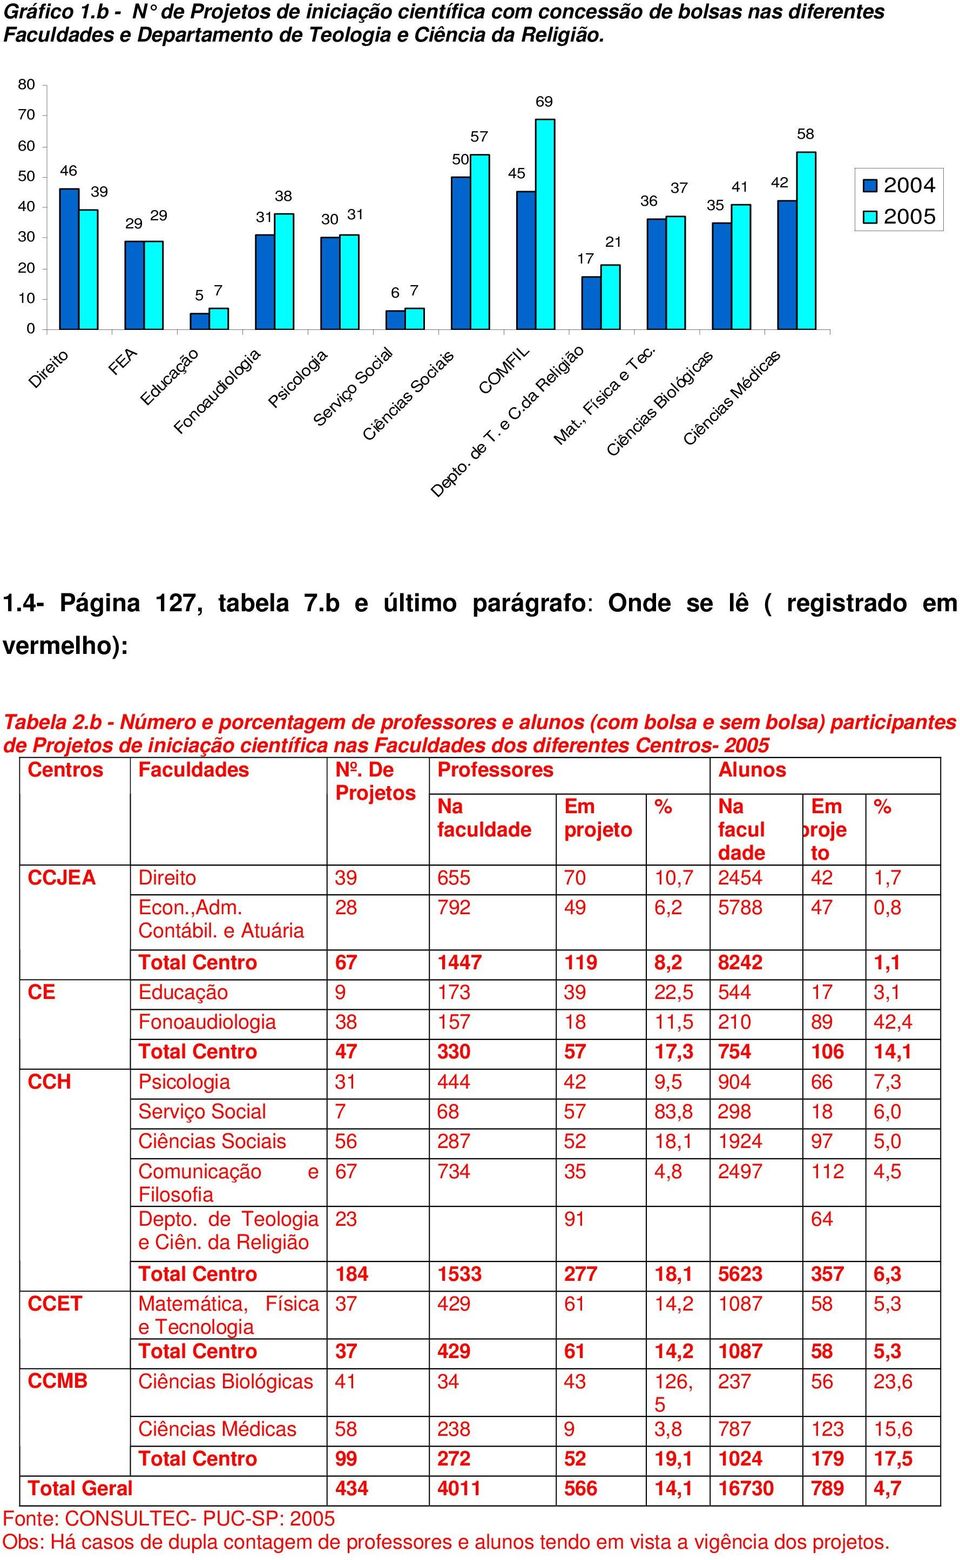 de T. e C.da Religião Mat., Física e Tec. Ciências Biológicas Ciências Médicas 1.4- Página 127, tabela 7.b e último parágrafo: Onde se lê ( registrado em vermelho): Tabela 2.